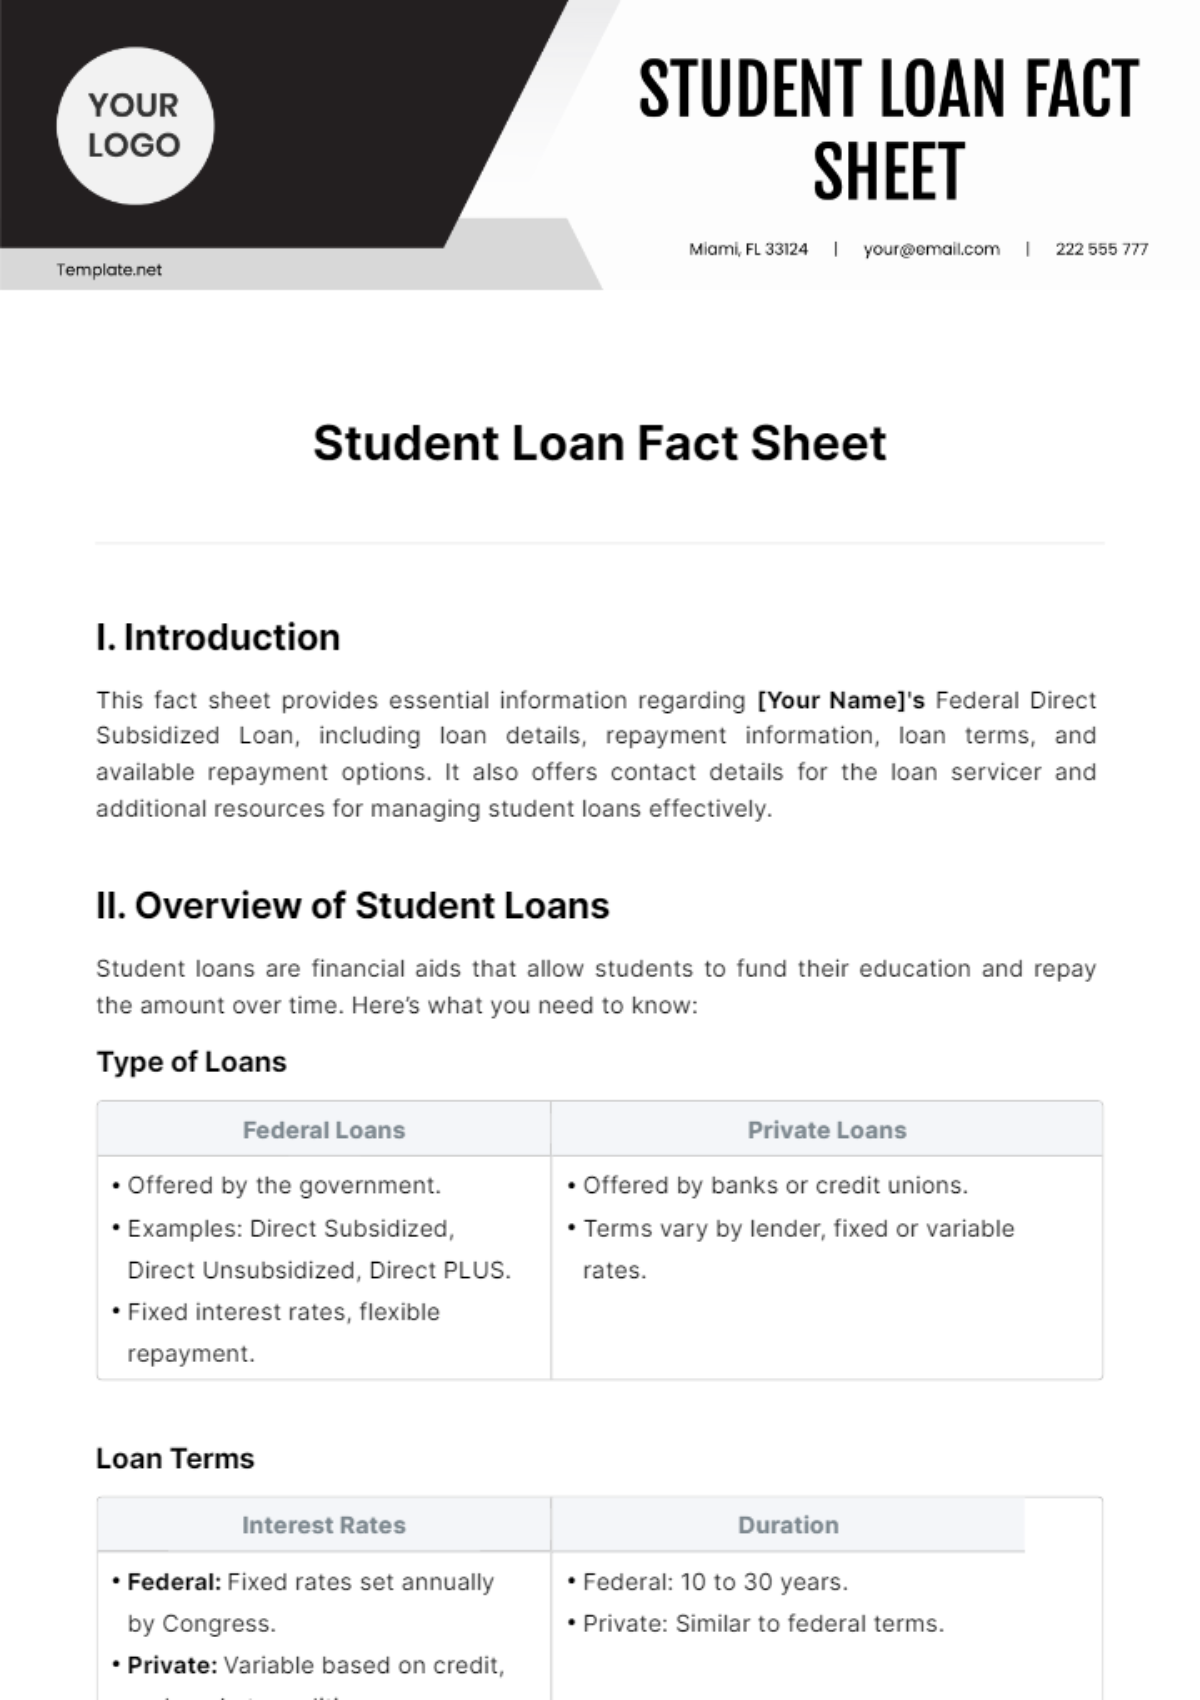 Student Loan Fact Sheet Template